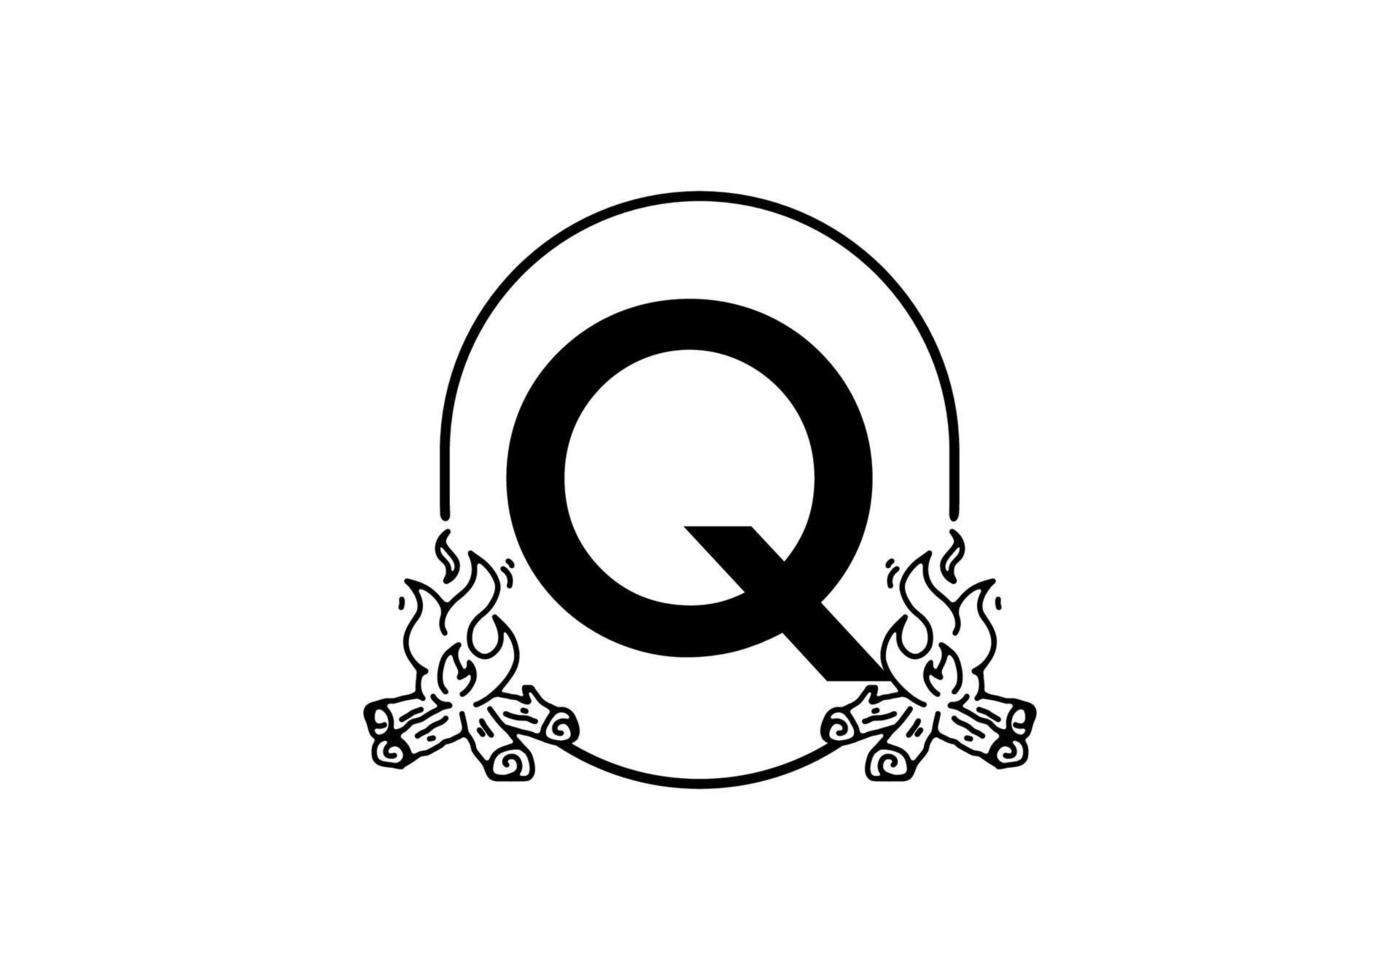 dessin au trait noir de feu de joie avec lettre initiale q vecteur